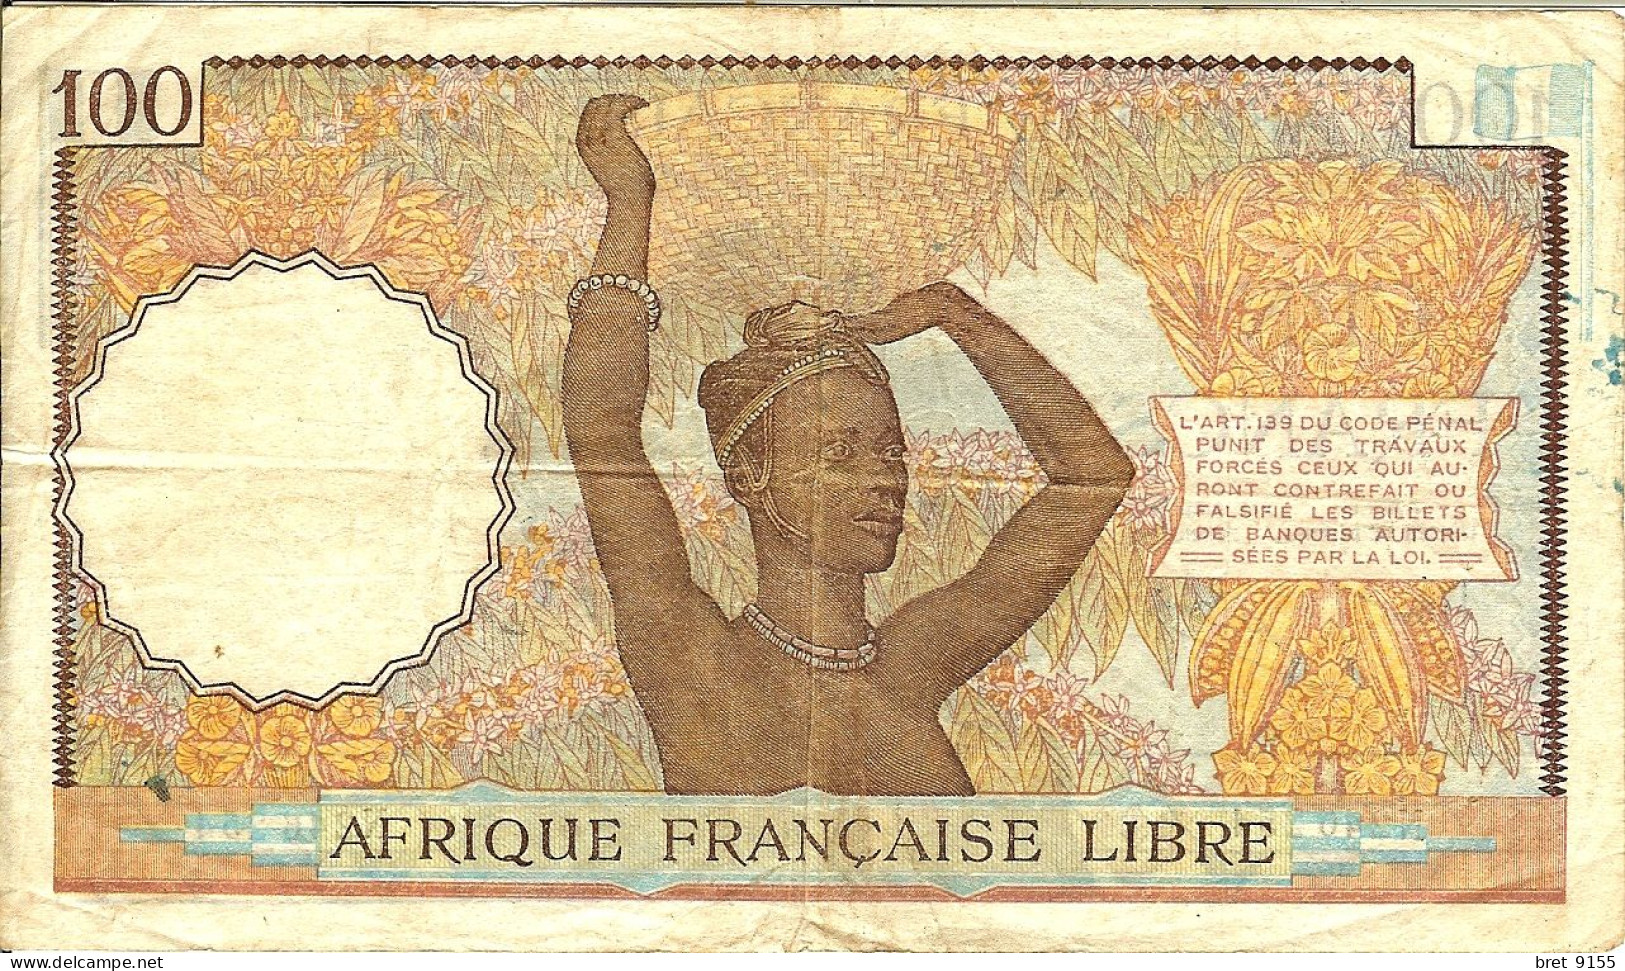 BILLET DE BANQUE AFRIQUE FRANCAISE LIBRE CONGO 100 FRANCS 1941 SERIE N246254 - Zuid-Afrika